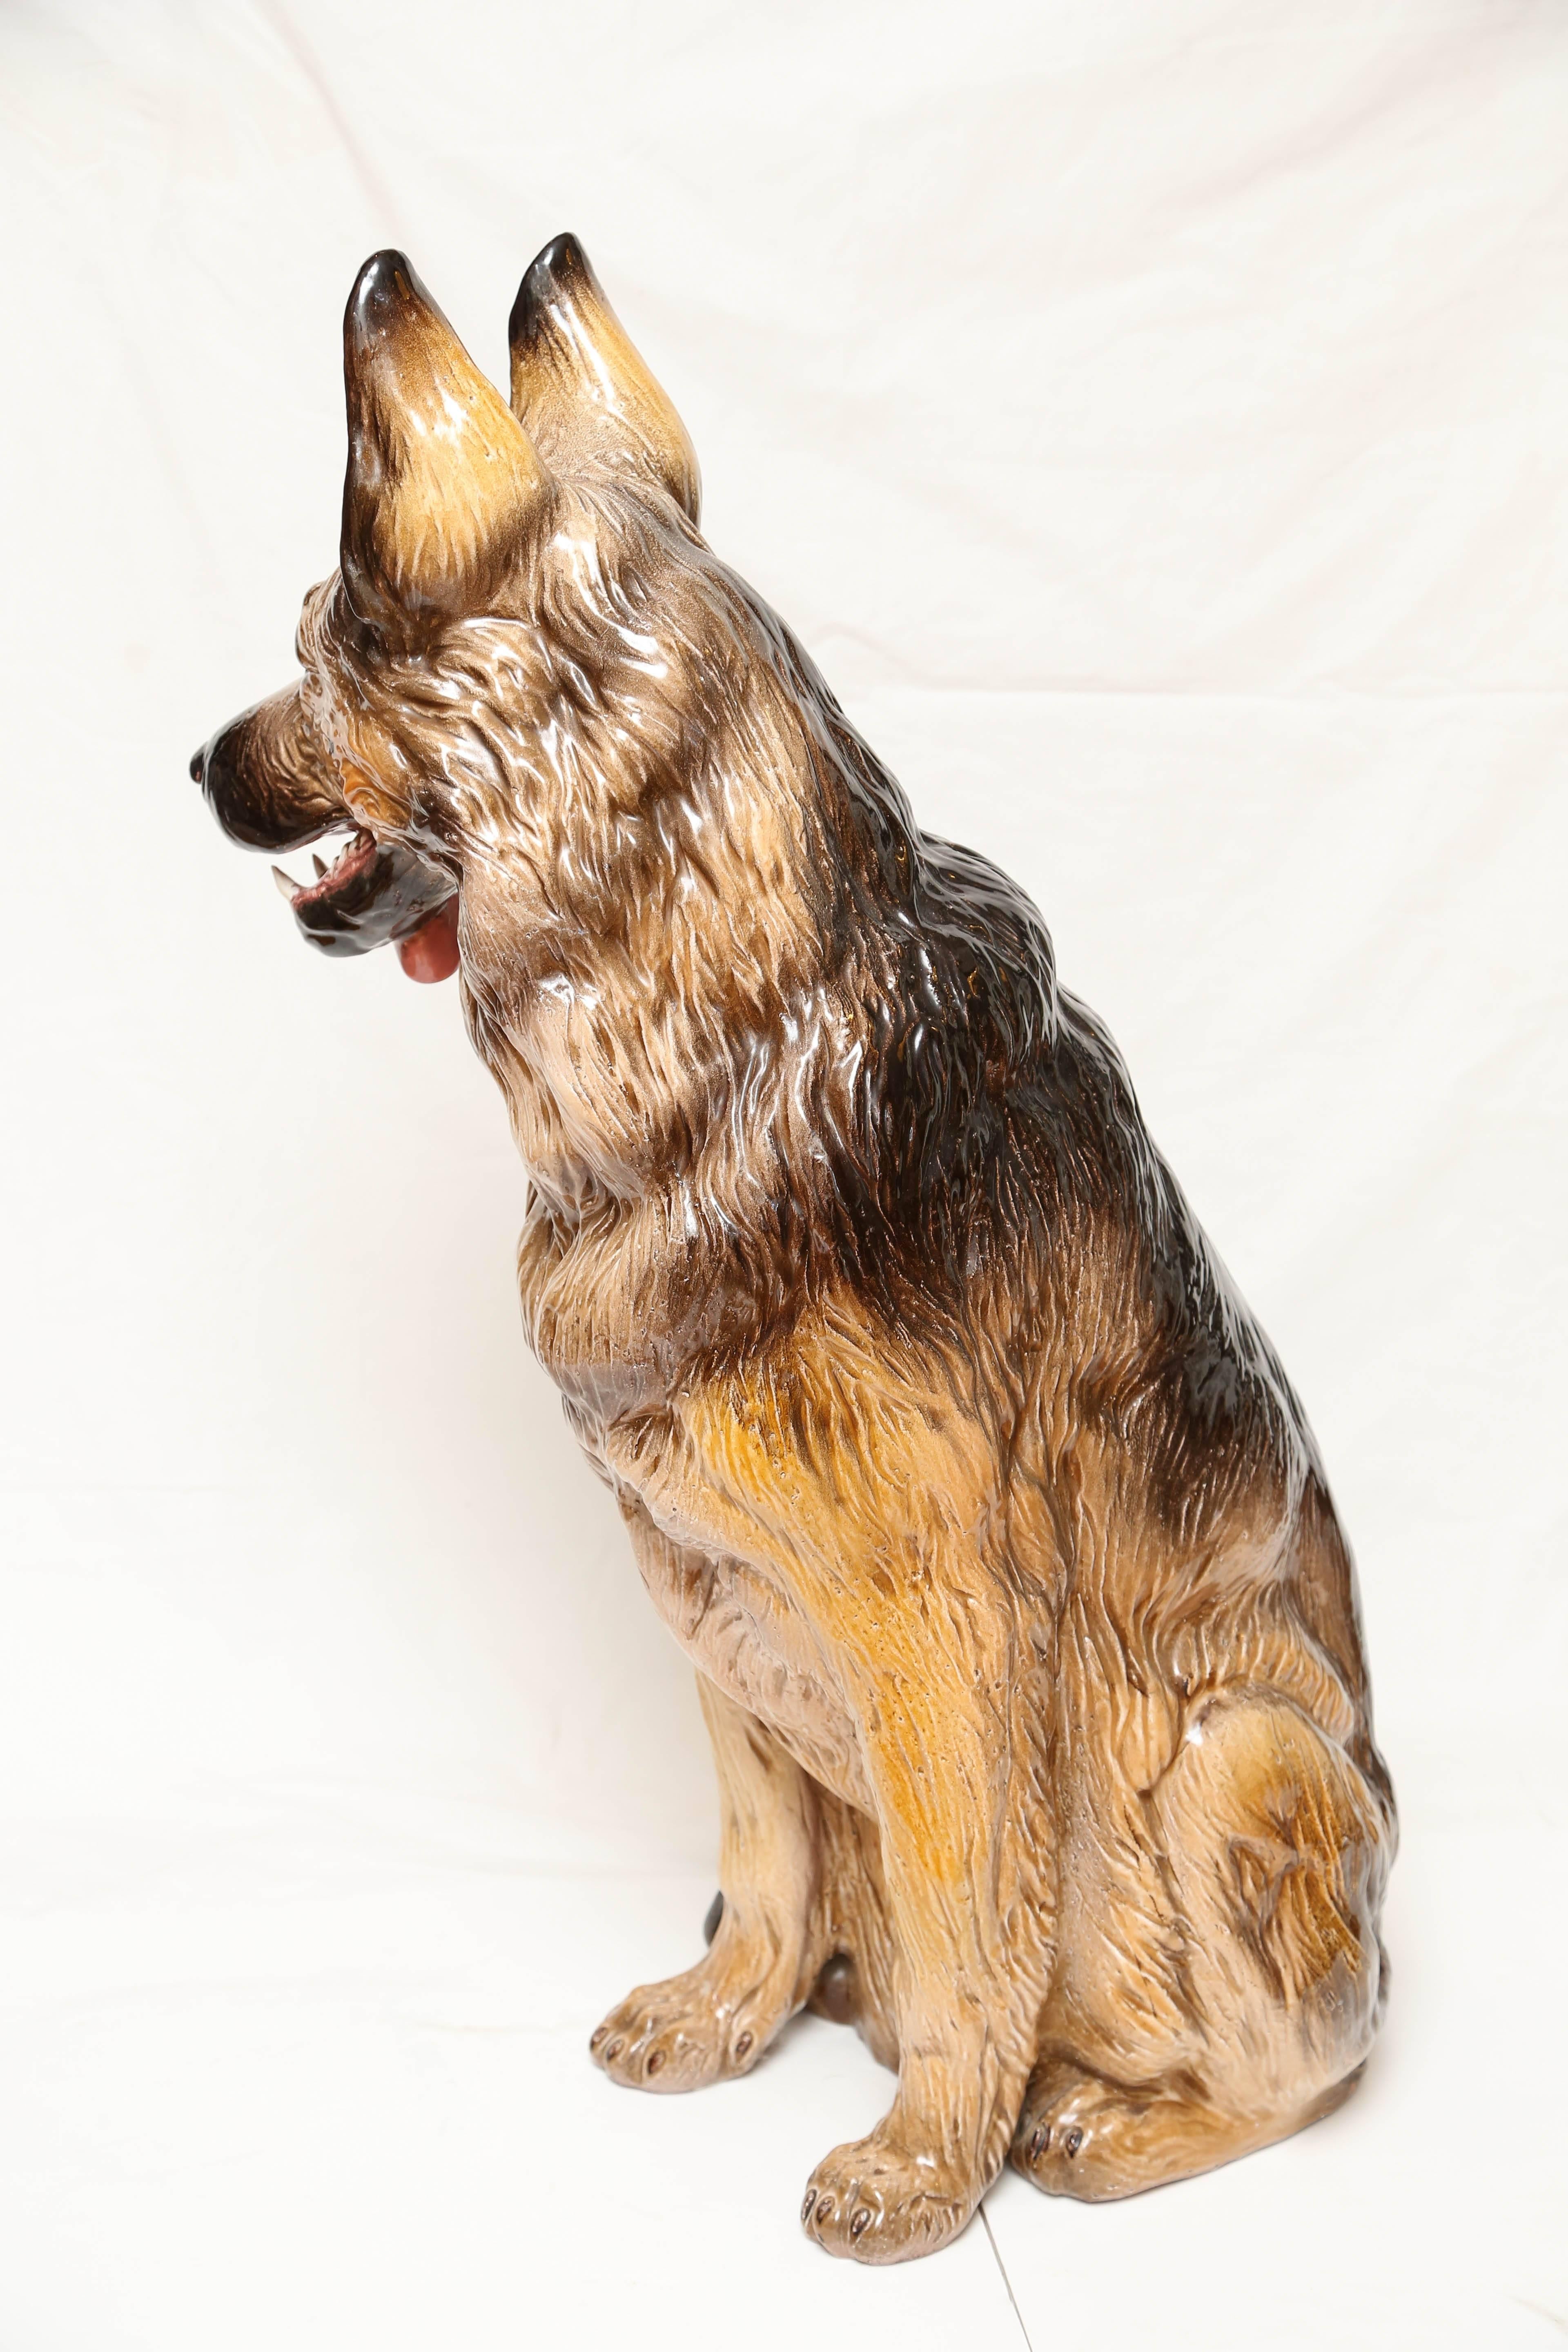 Terracotta Terra Cotta Lifesize German Shepherd Dog Sculpture